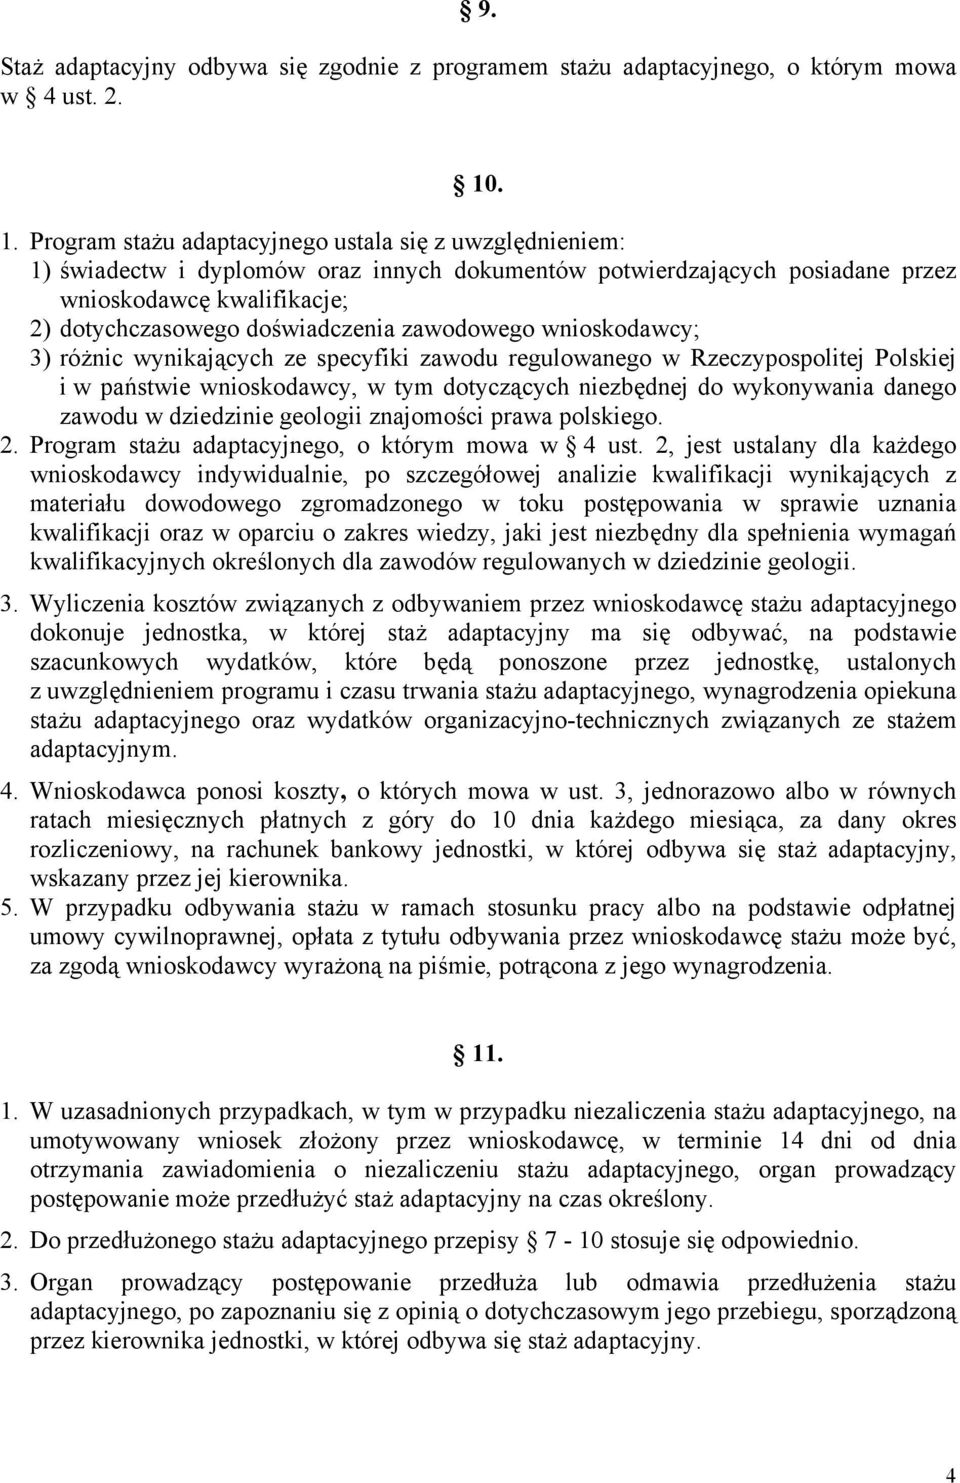 doświadczenia zawodowego wnioskodawcy; 3) różnic wynikających ze specyfiki zawodu regulowanego w Rzeczypospolitej Polskiej i w państwie wnioskodawcy, w tym dotyczących niezbędnej do wykonywania